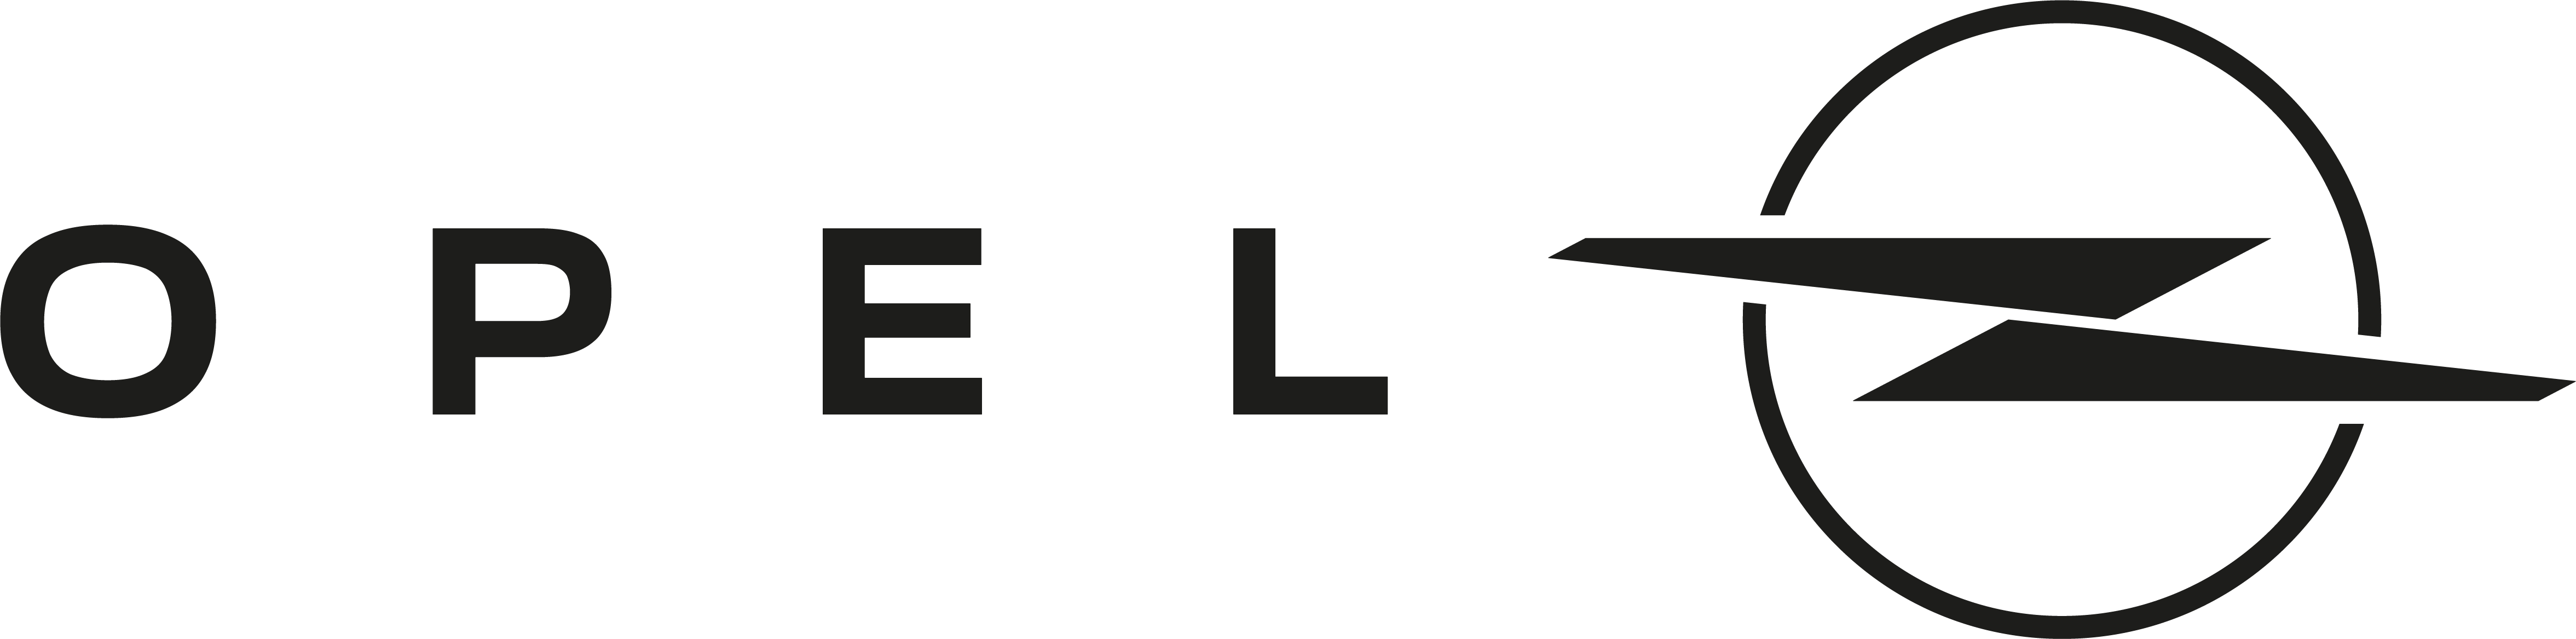 opel-logo.png